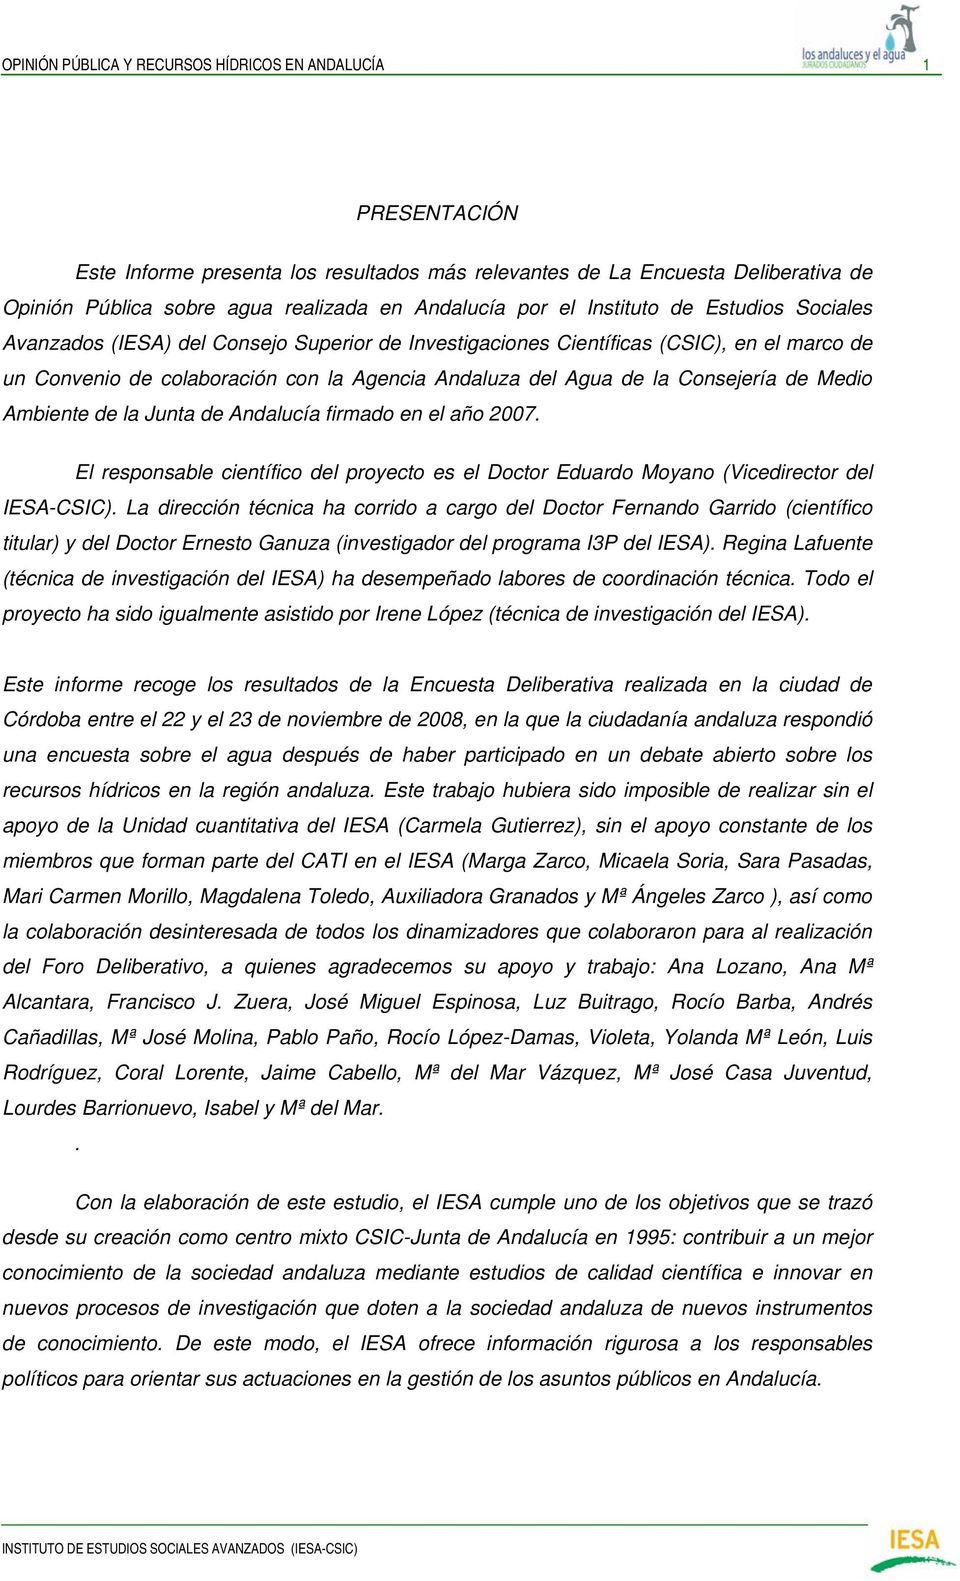 Consejería de Medio Ambiente de la Junta de Andalucía firmado en el año 2007. El responsable científico del proyecto es el Doctor Eduardo Moyano (Vicedirector del IESA-CSIC).